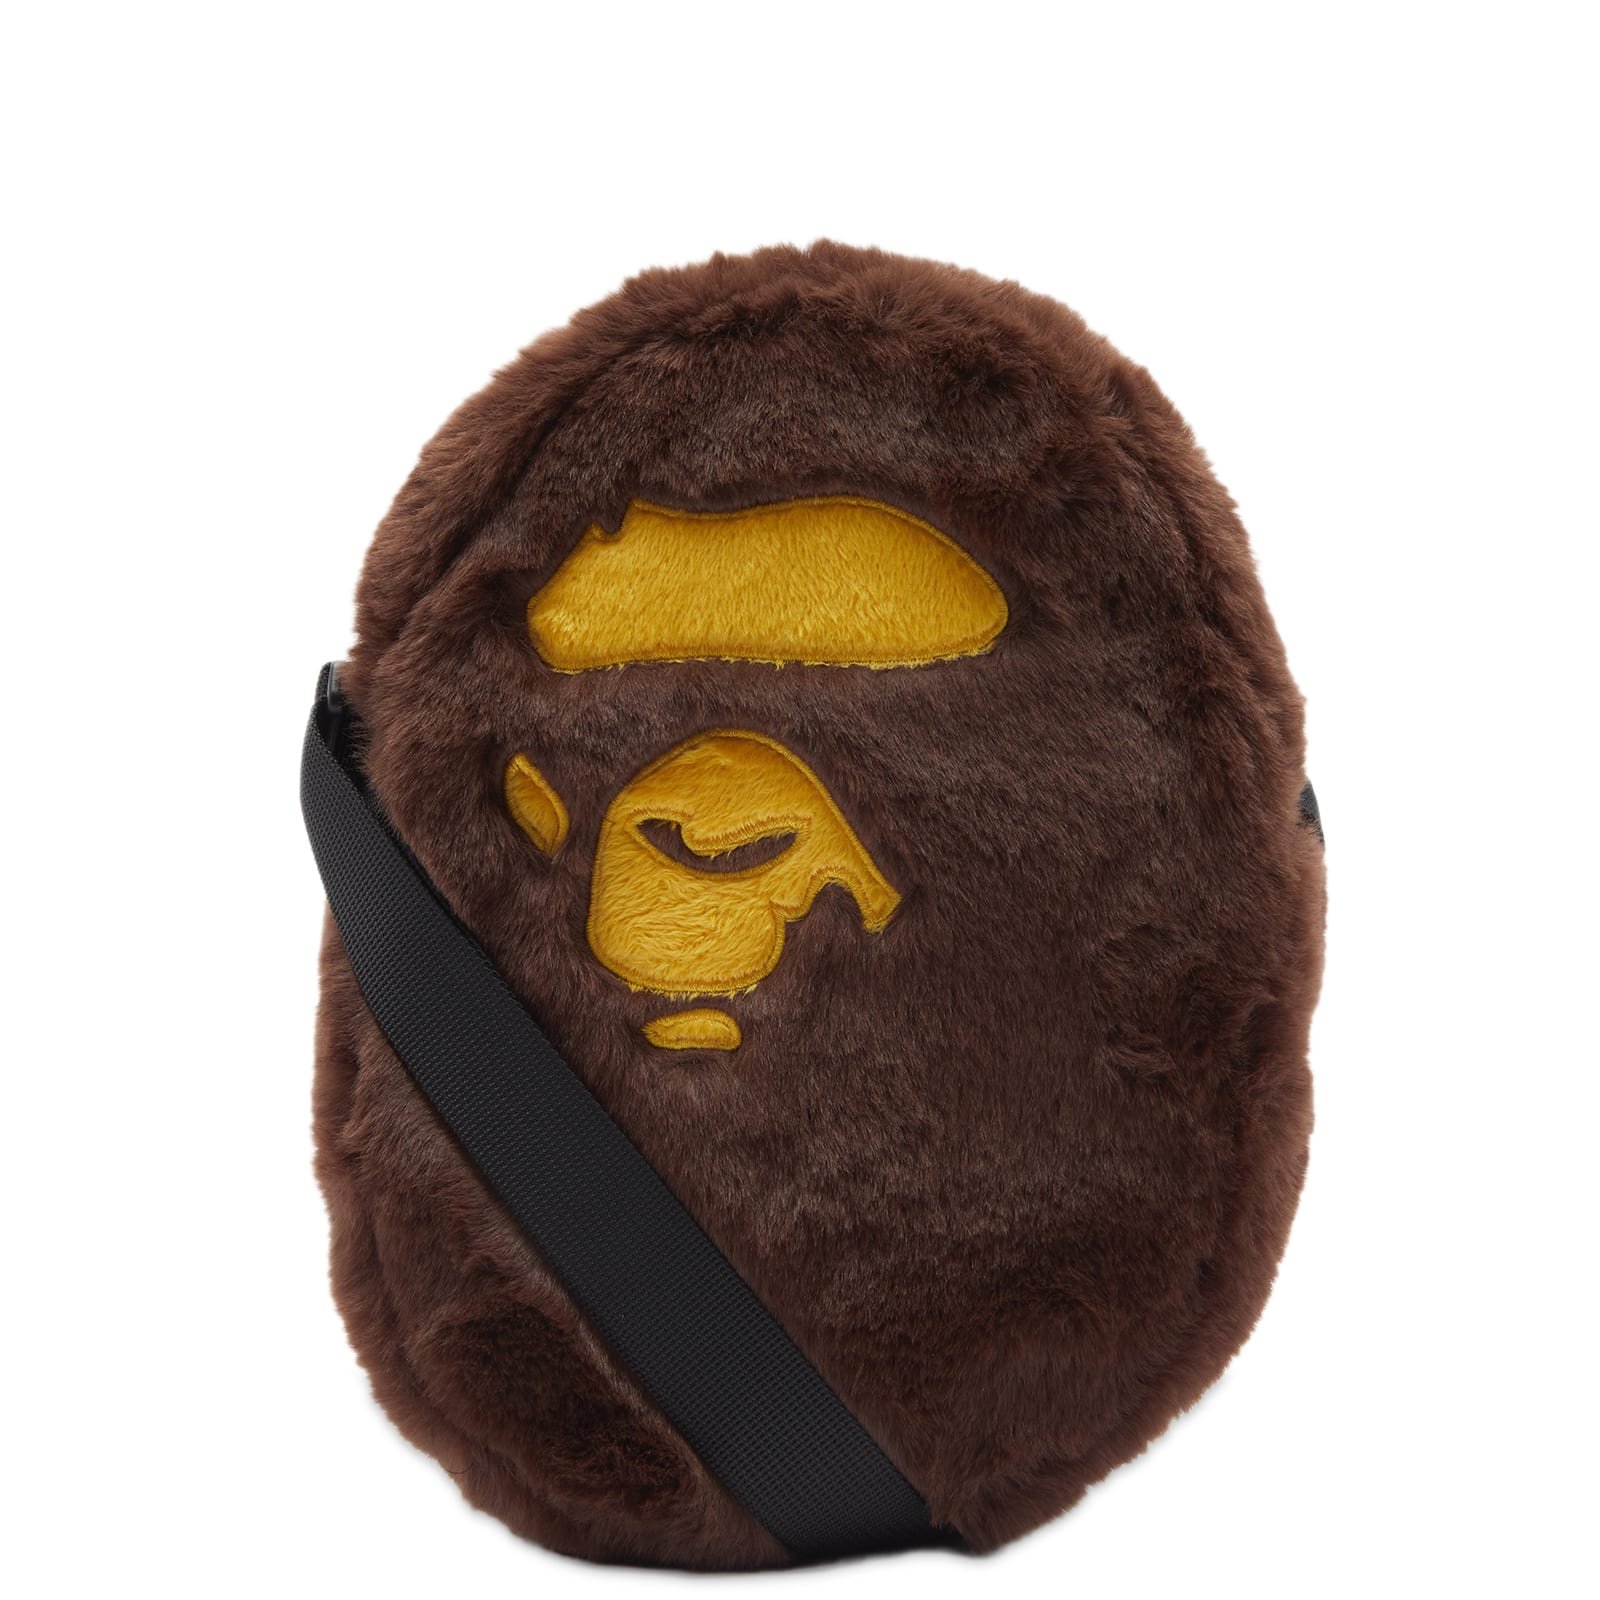 Buy BAPE Ape Head Shoulder Bag 'Brown' - 1J30 190 001 BROWN